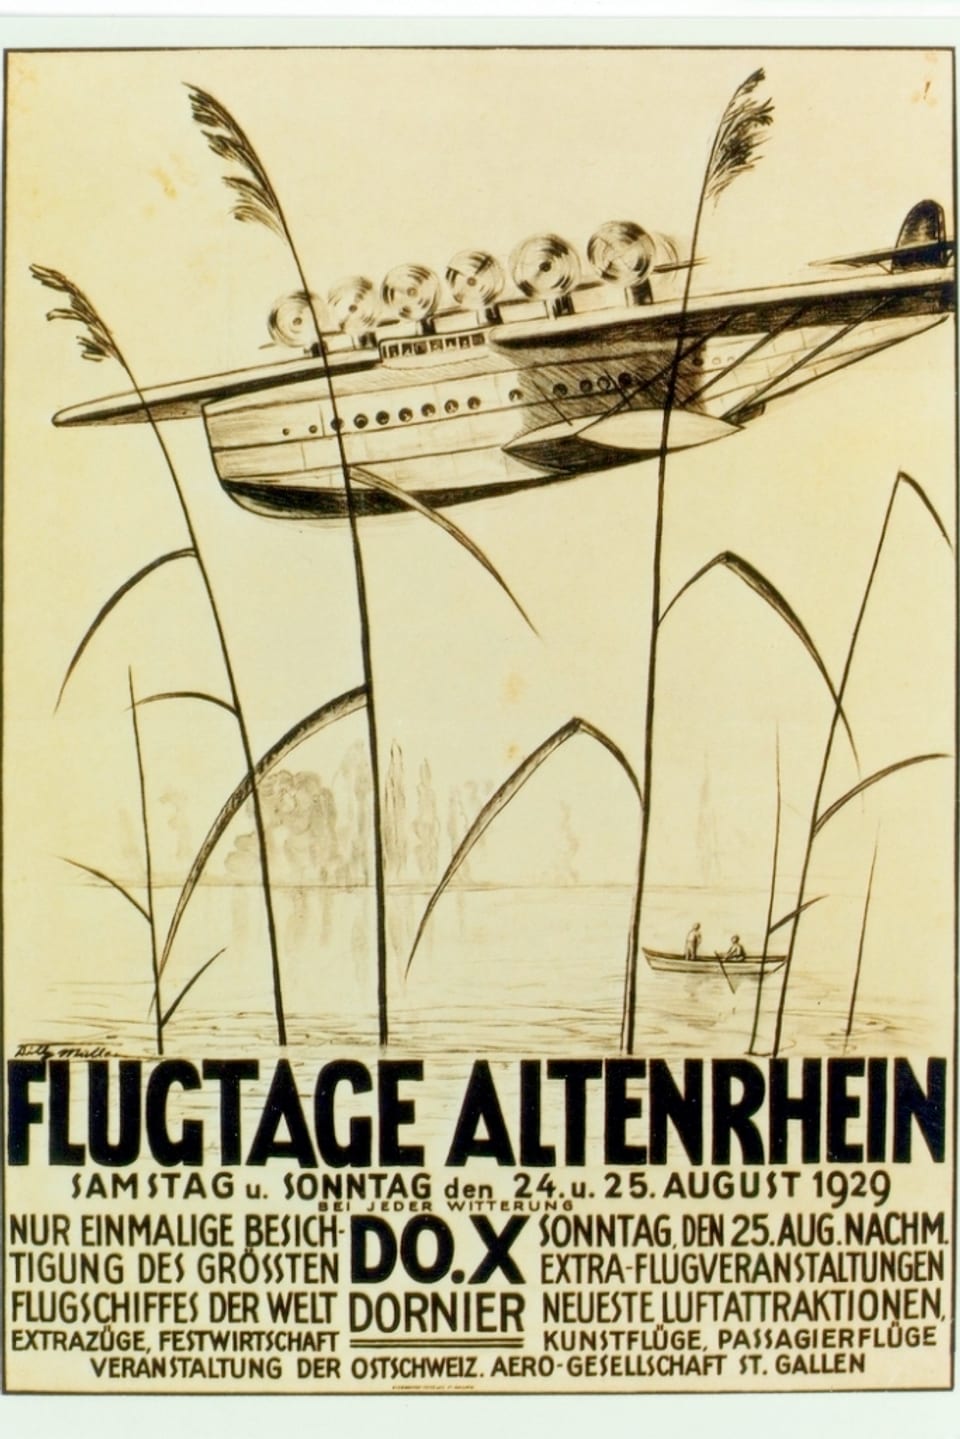 Ein Werbeplakat zu den Flugtagen in Altenrhein im August 1929 – mit Hinweis auf die Do X, damals das grösste Flugzeug der Welt.